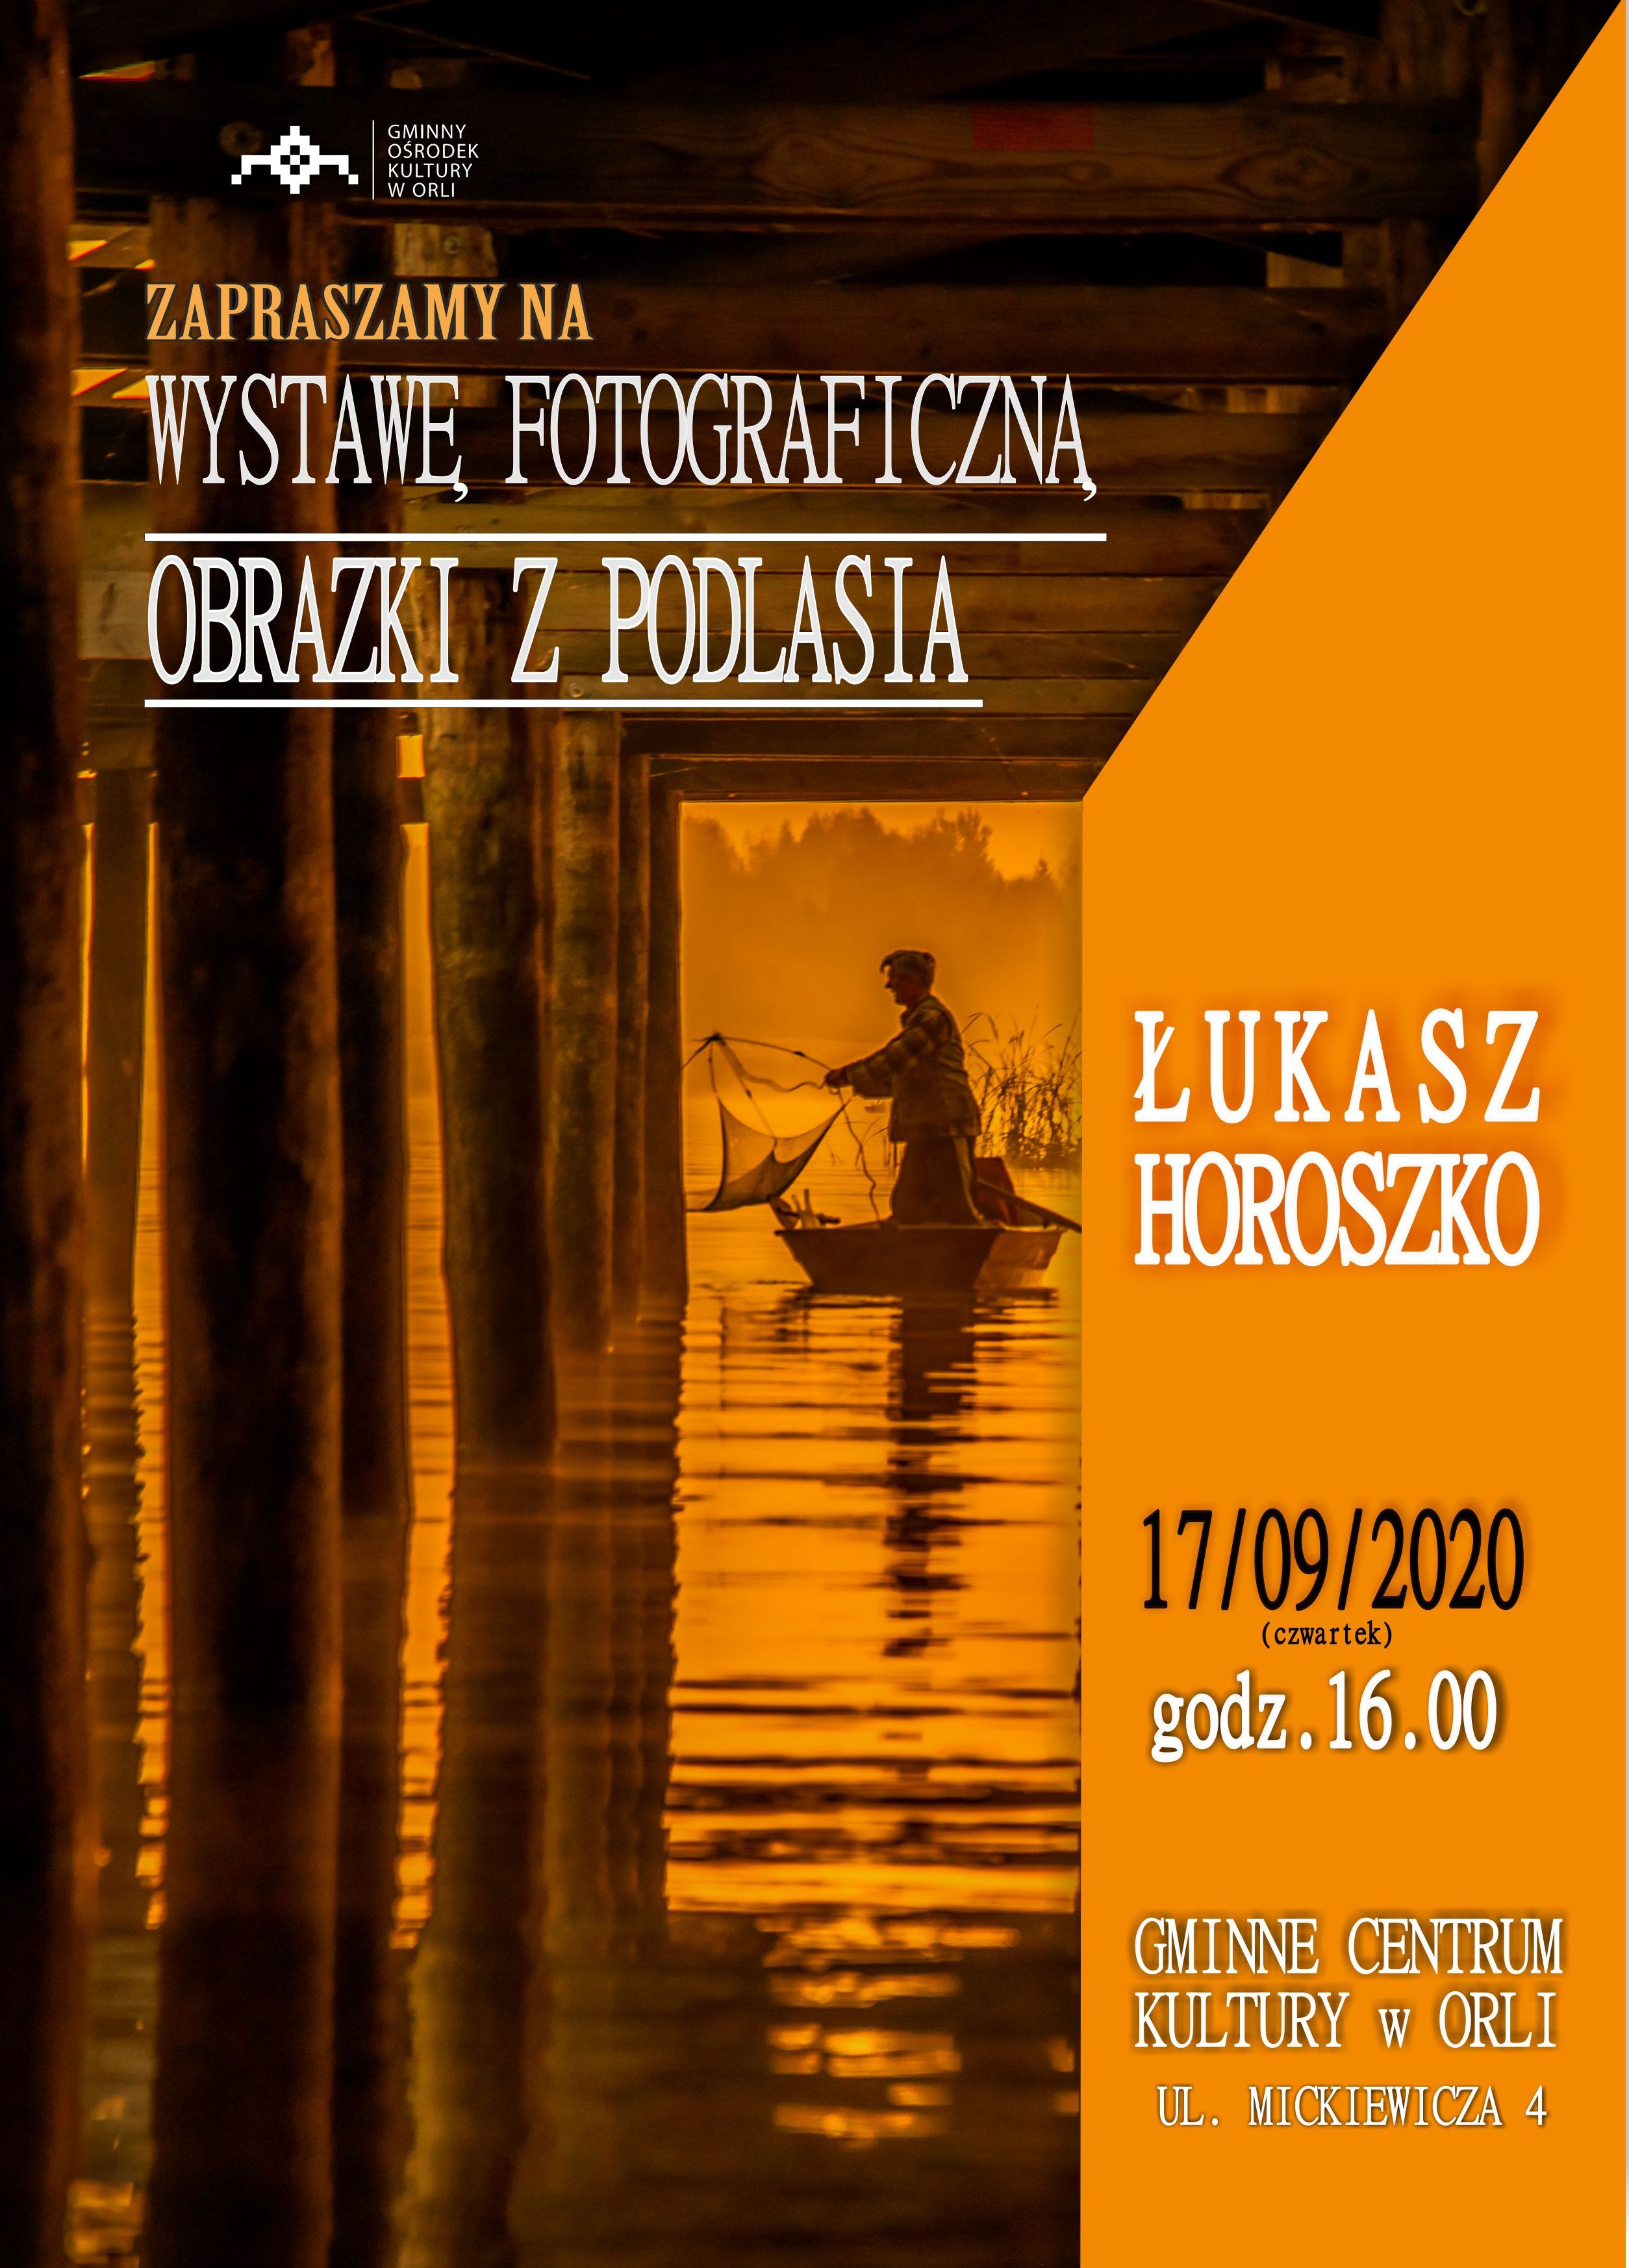 Wystawa fotograficzna  obrazki z Podlasia pana Łukasza Horoszko 17 września o godzinie 16 w Gminnym Centrum Kultury